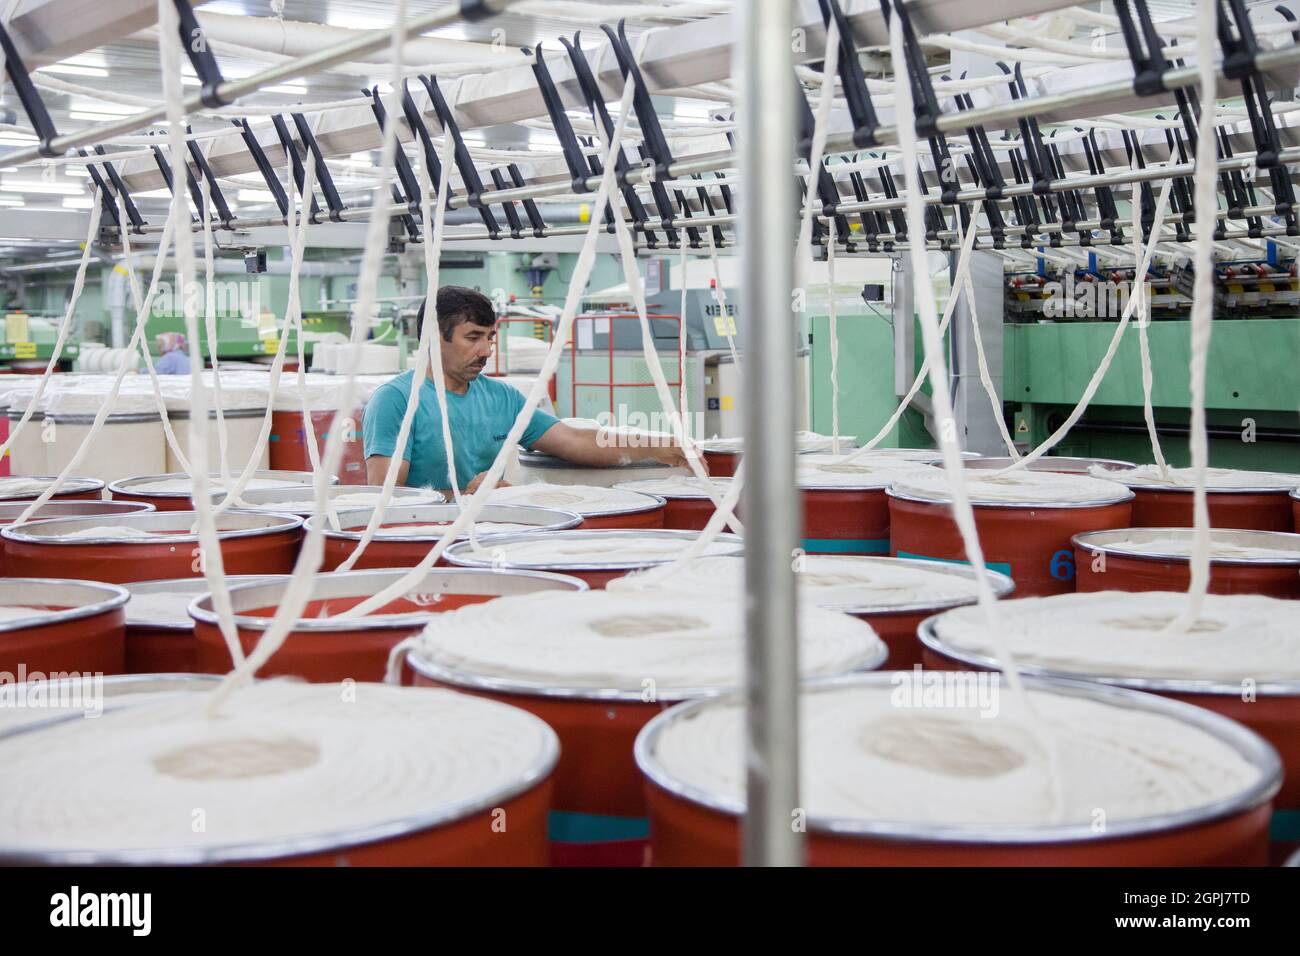 Istanbul / Turchia - 08/26/2014: Un lavoratore sconosciuto che lavora in una fabbrica tessile. Foto Stock